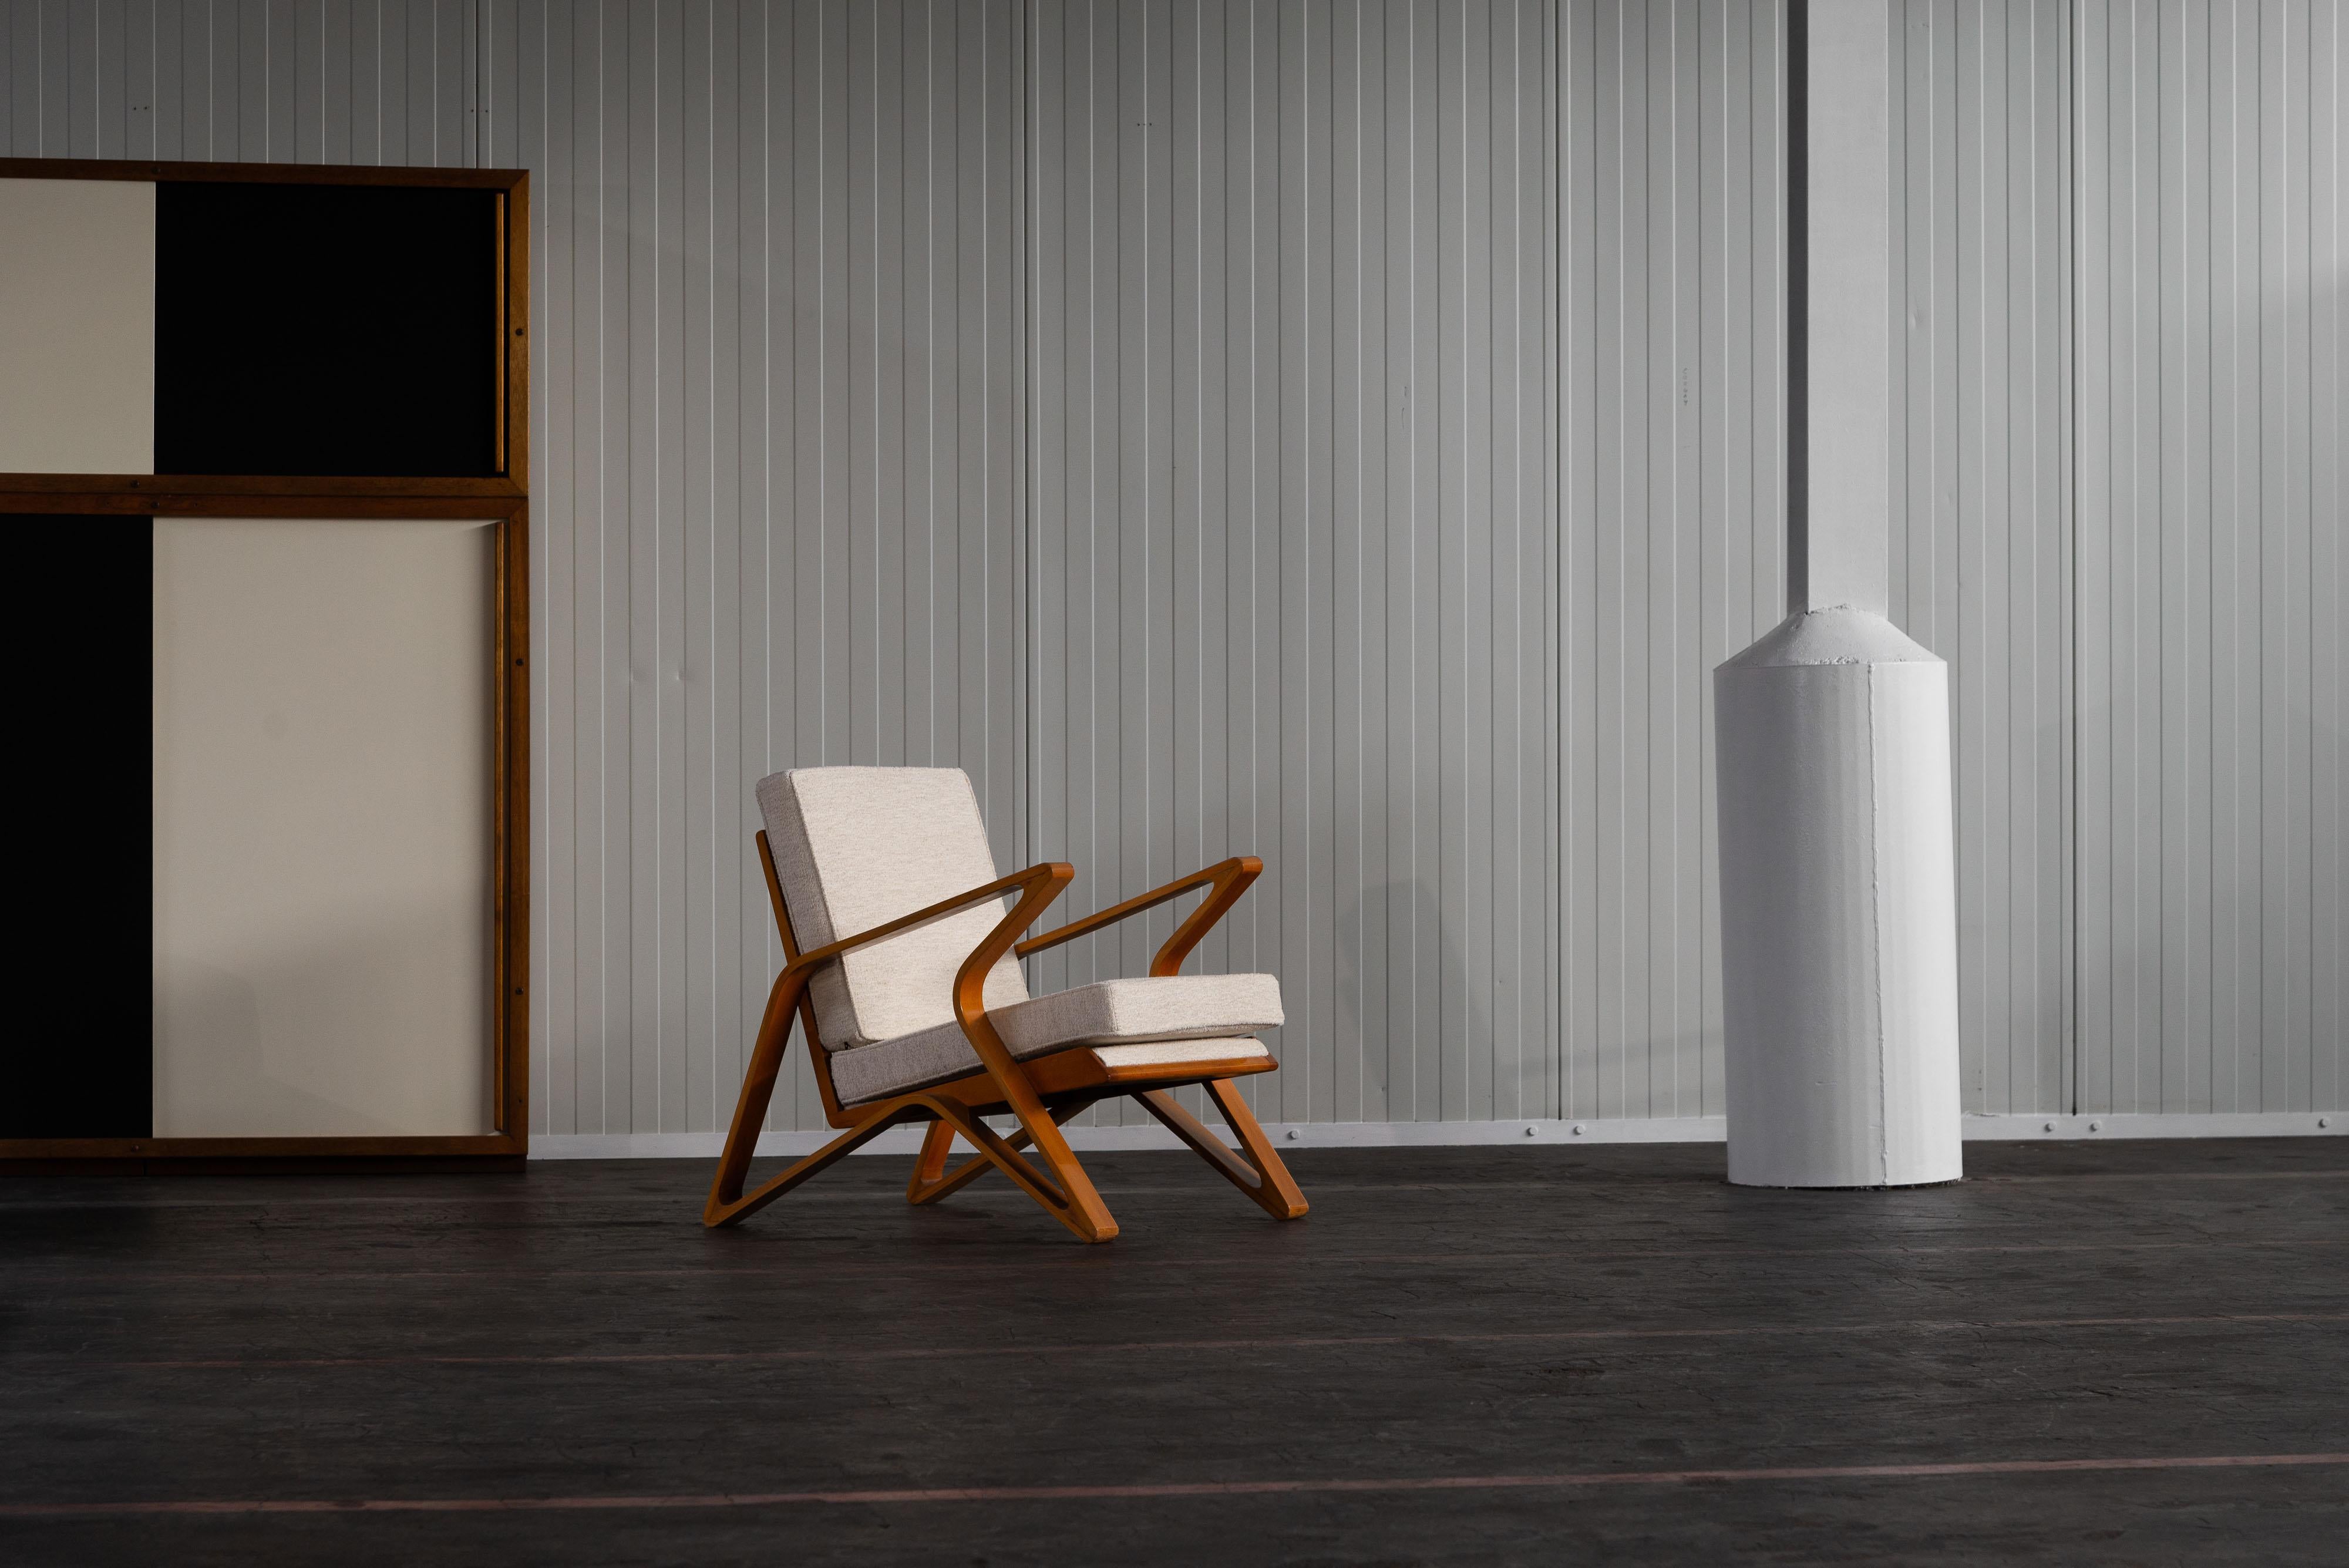 Chaise de salon étonnante et super rare conçue par De Coene Frères, Courtrai Belgique dans les années 1950. Cette chaise a une structure en hêtre dans une teinte orange-brune chaleureuse. Pour préserver l'authenticité de cette pièce, les coussins